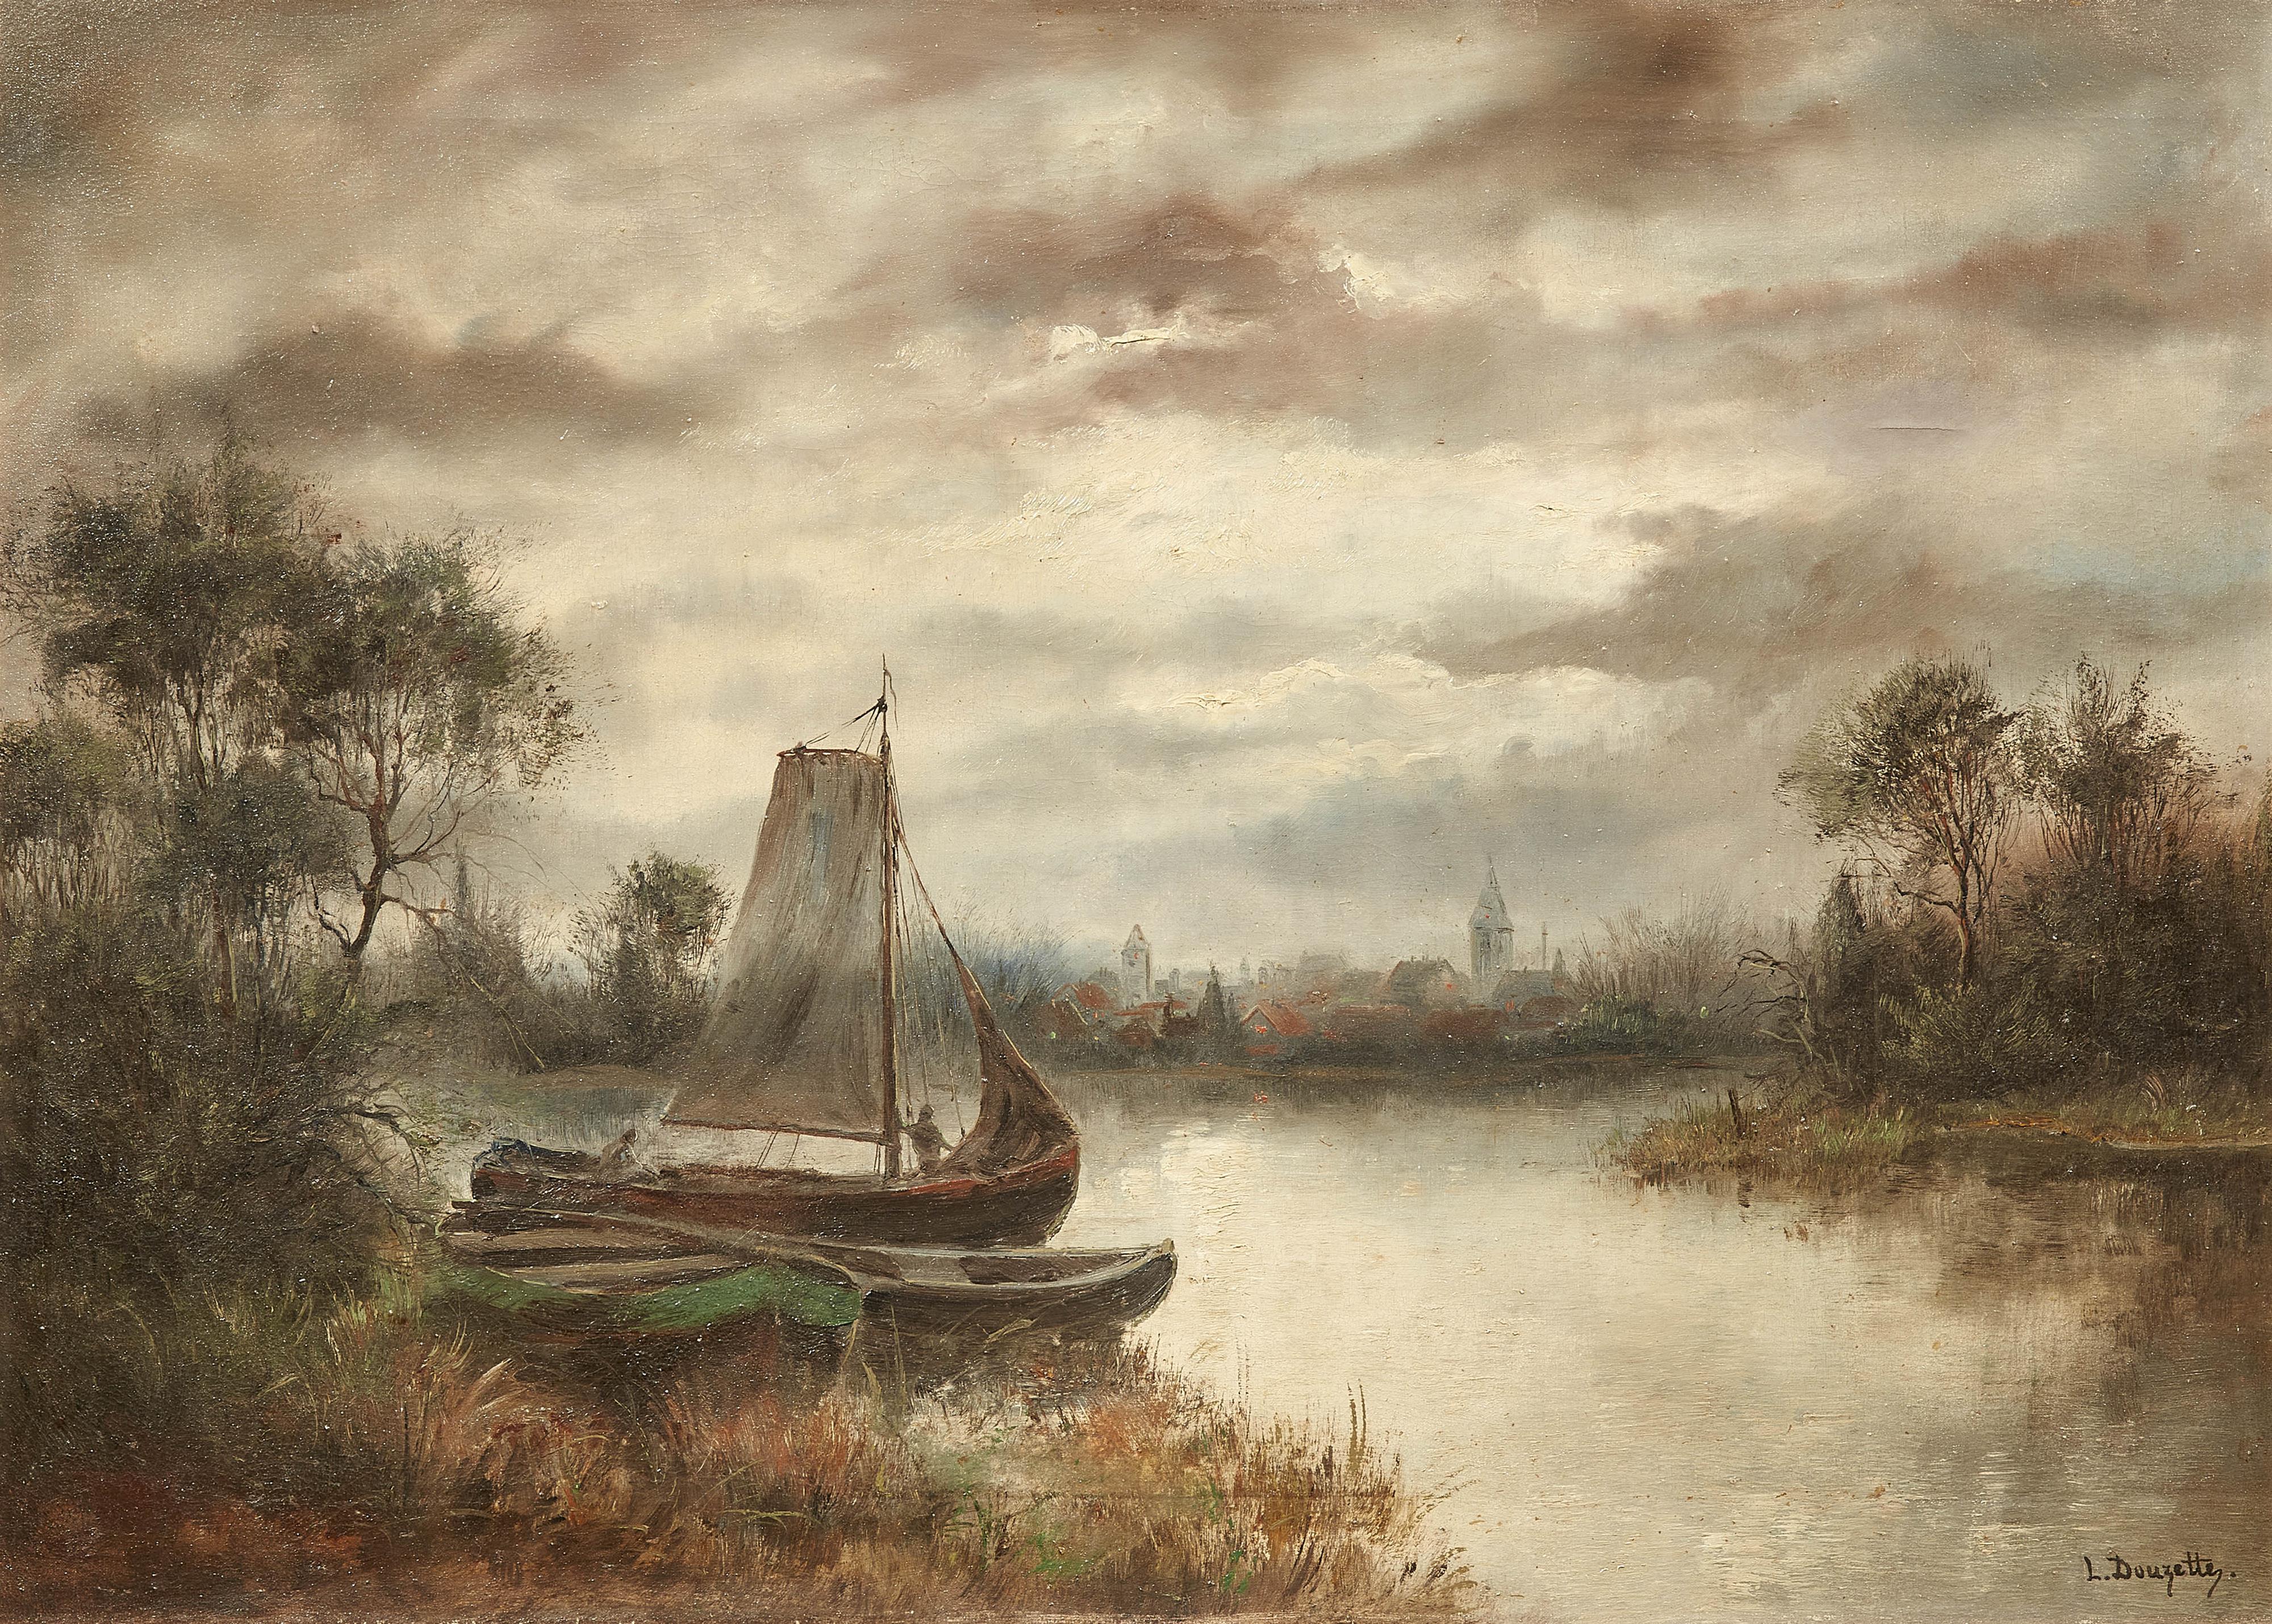 Louis Douzette - Moonlit River Landscape with Boats and a Village - image-1